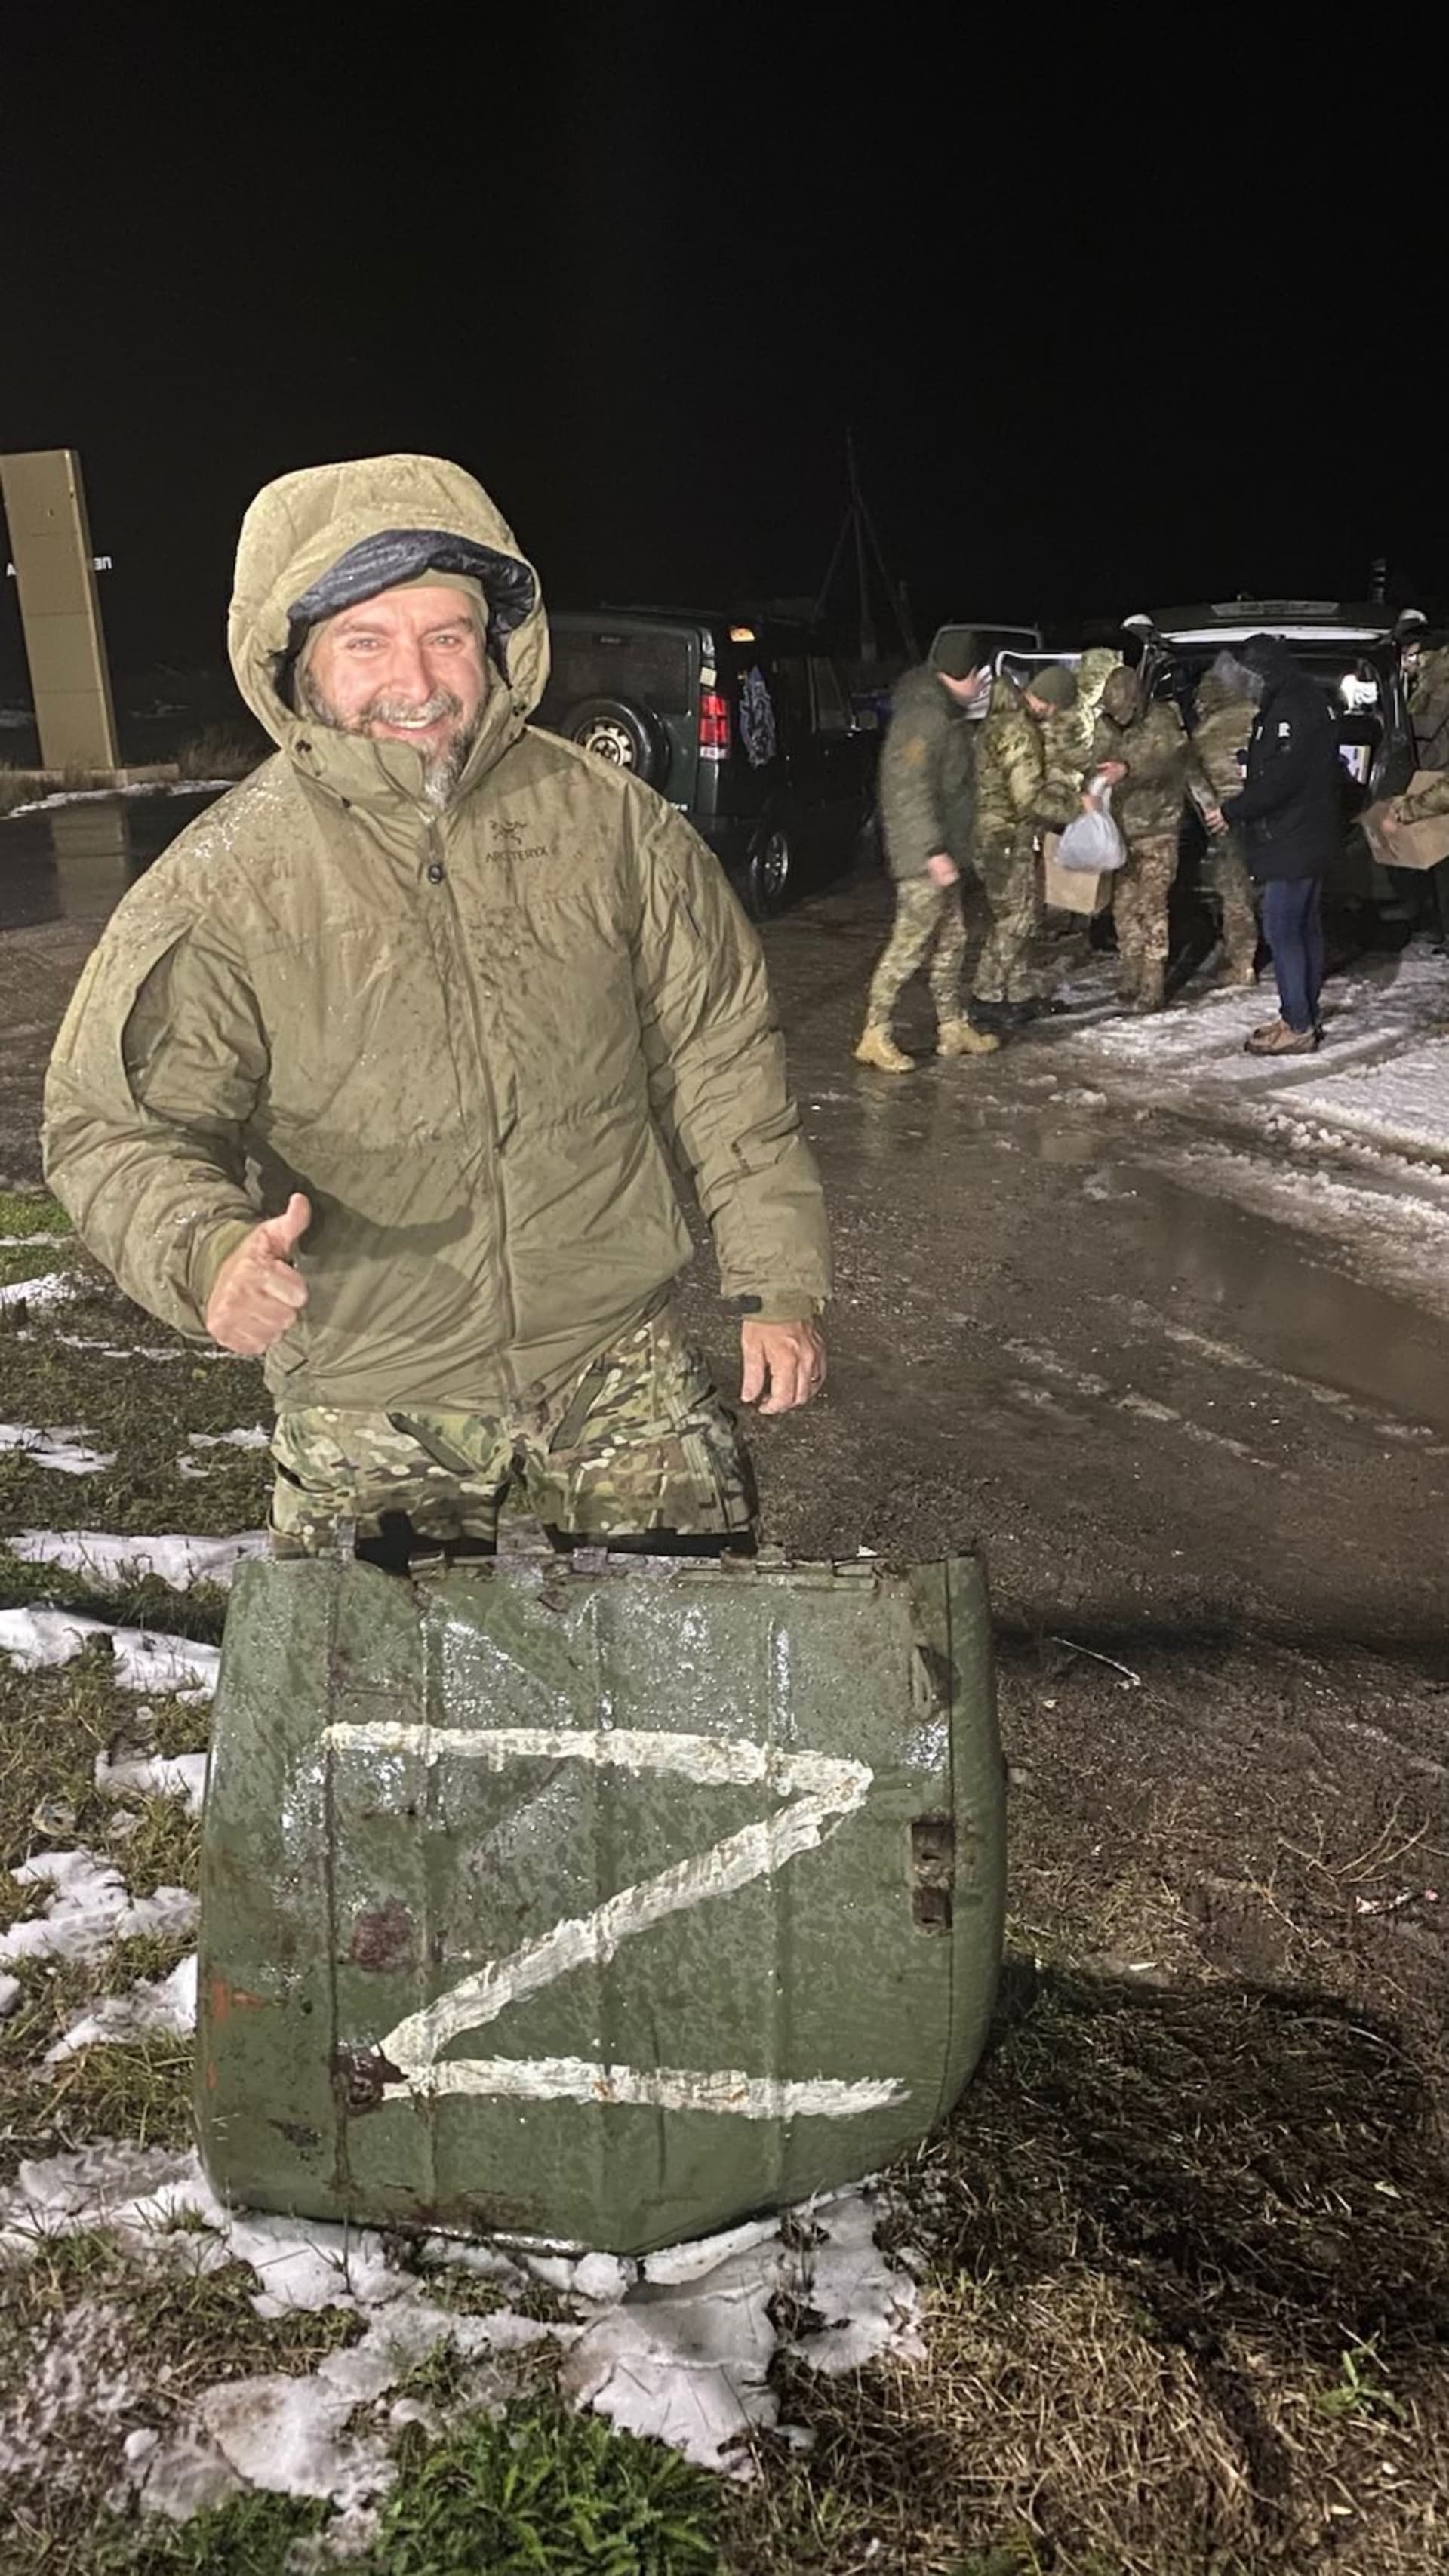 Střípky z české humanitární výpravy do Chersonu a dalších osvobozených ukrajinských měst pod taktovkou Team4Ukraine.